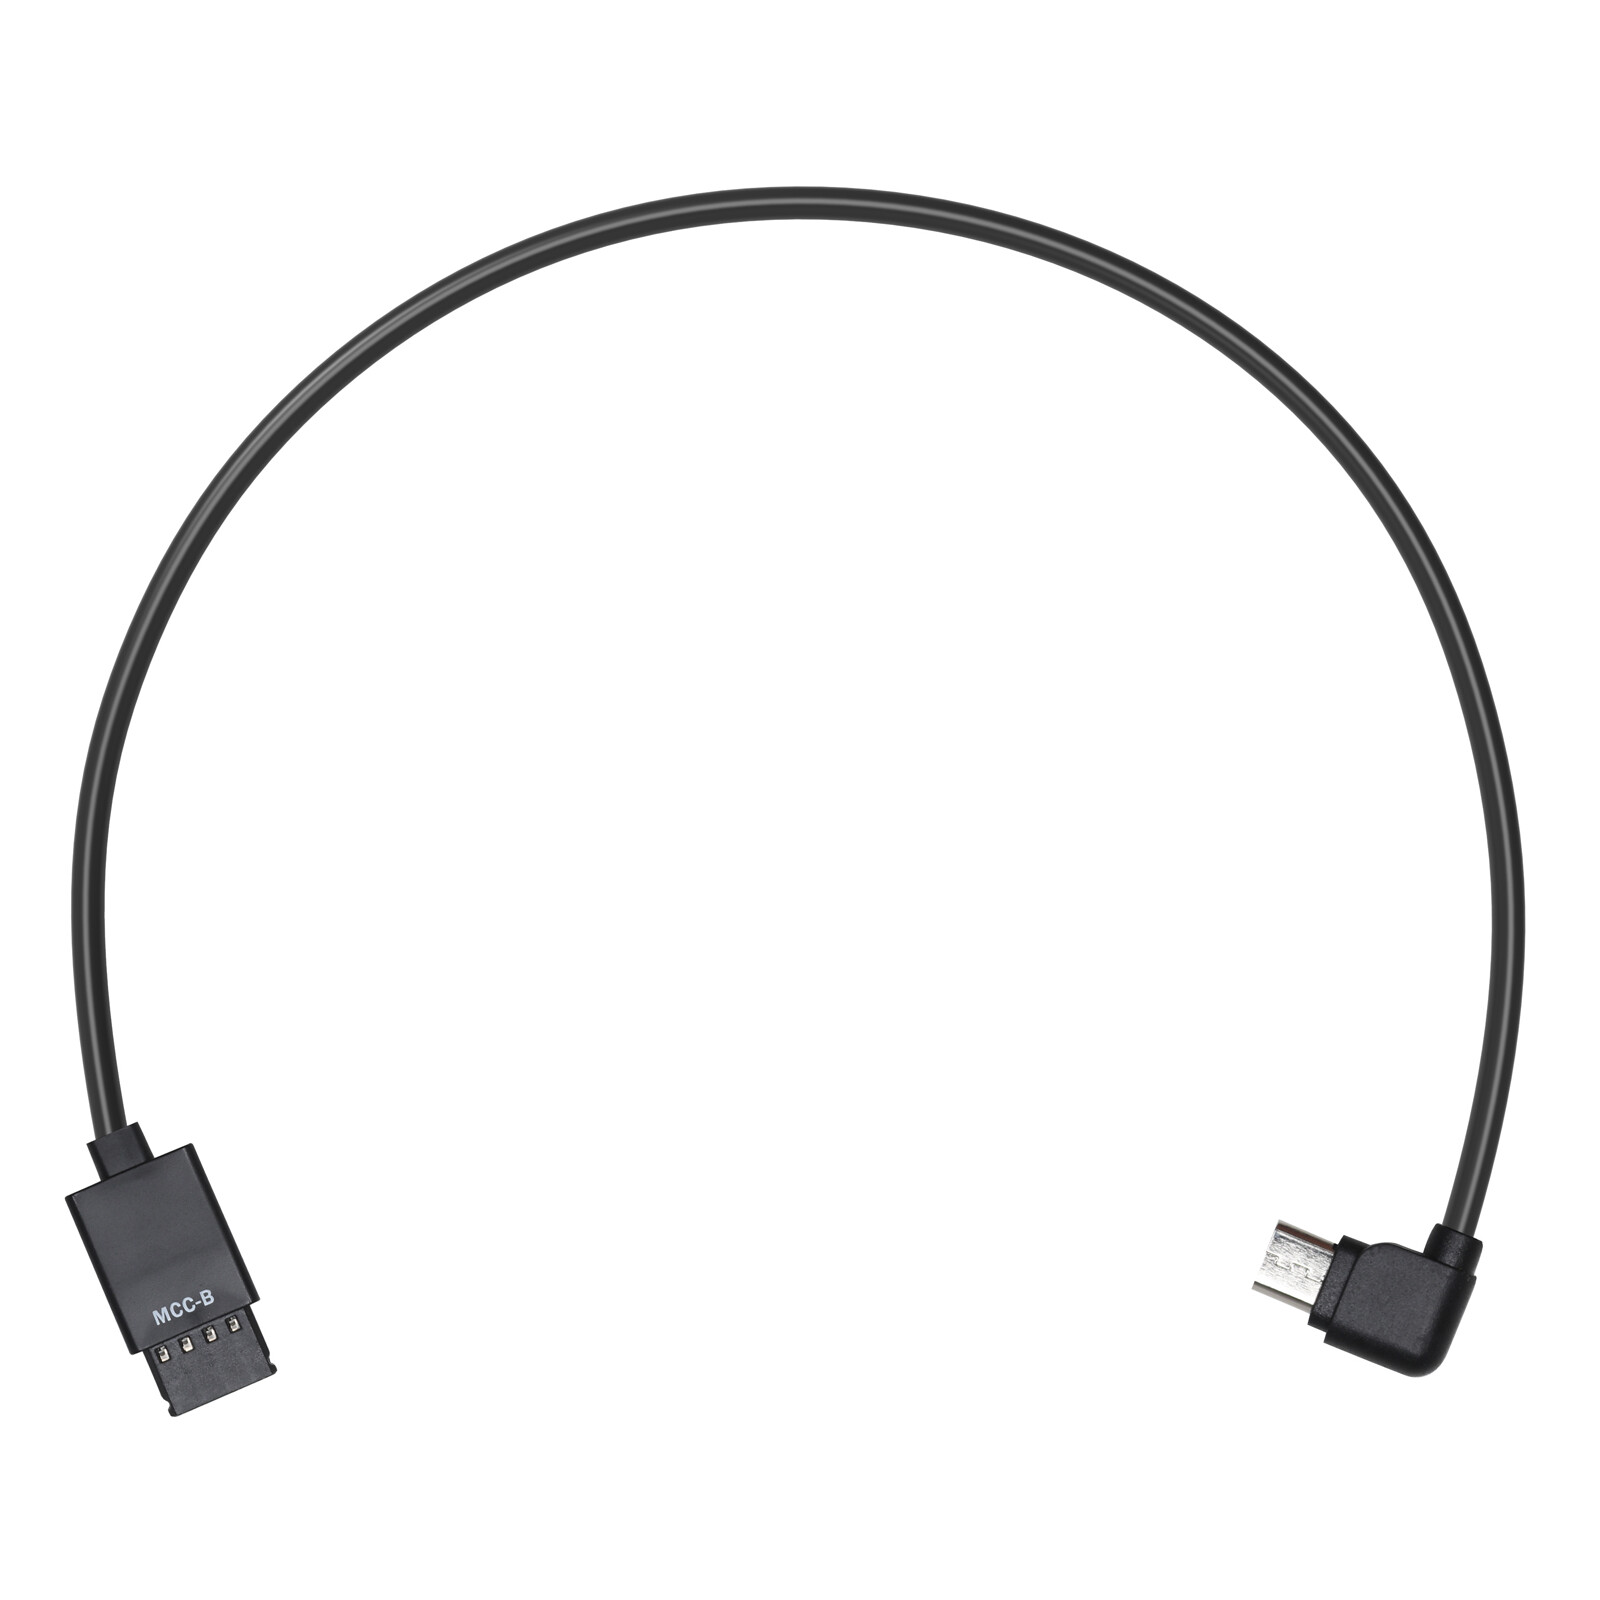 DJI Ronin-S Multi-Camera Control Cable (Type-B Micro USB)